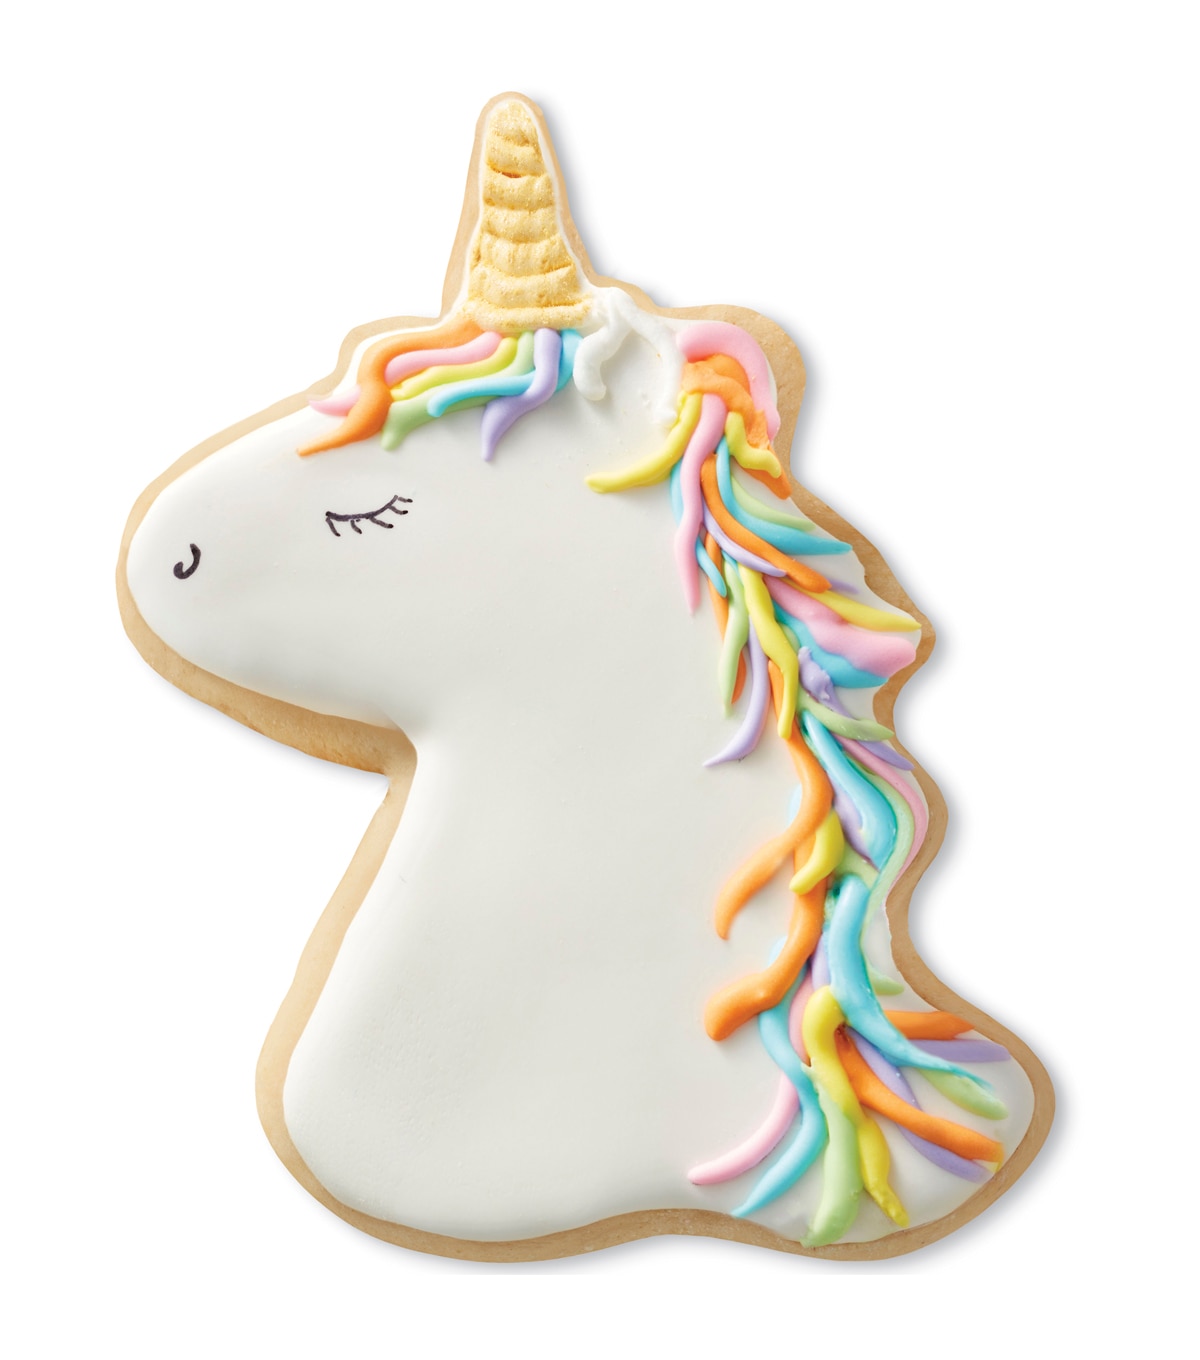 unicorn cookie cutter asda